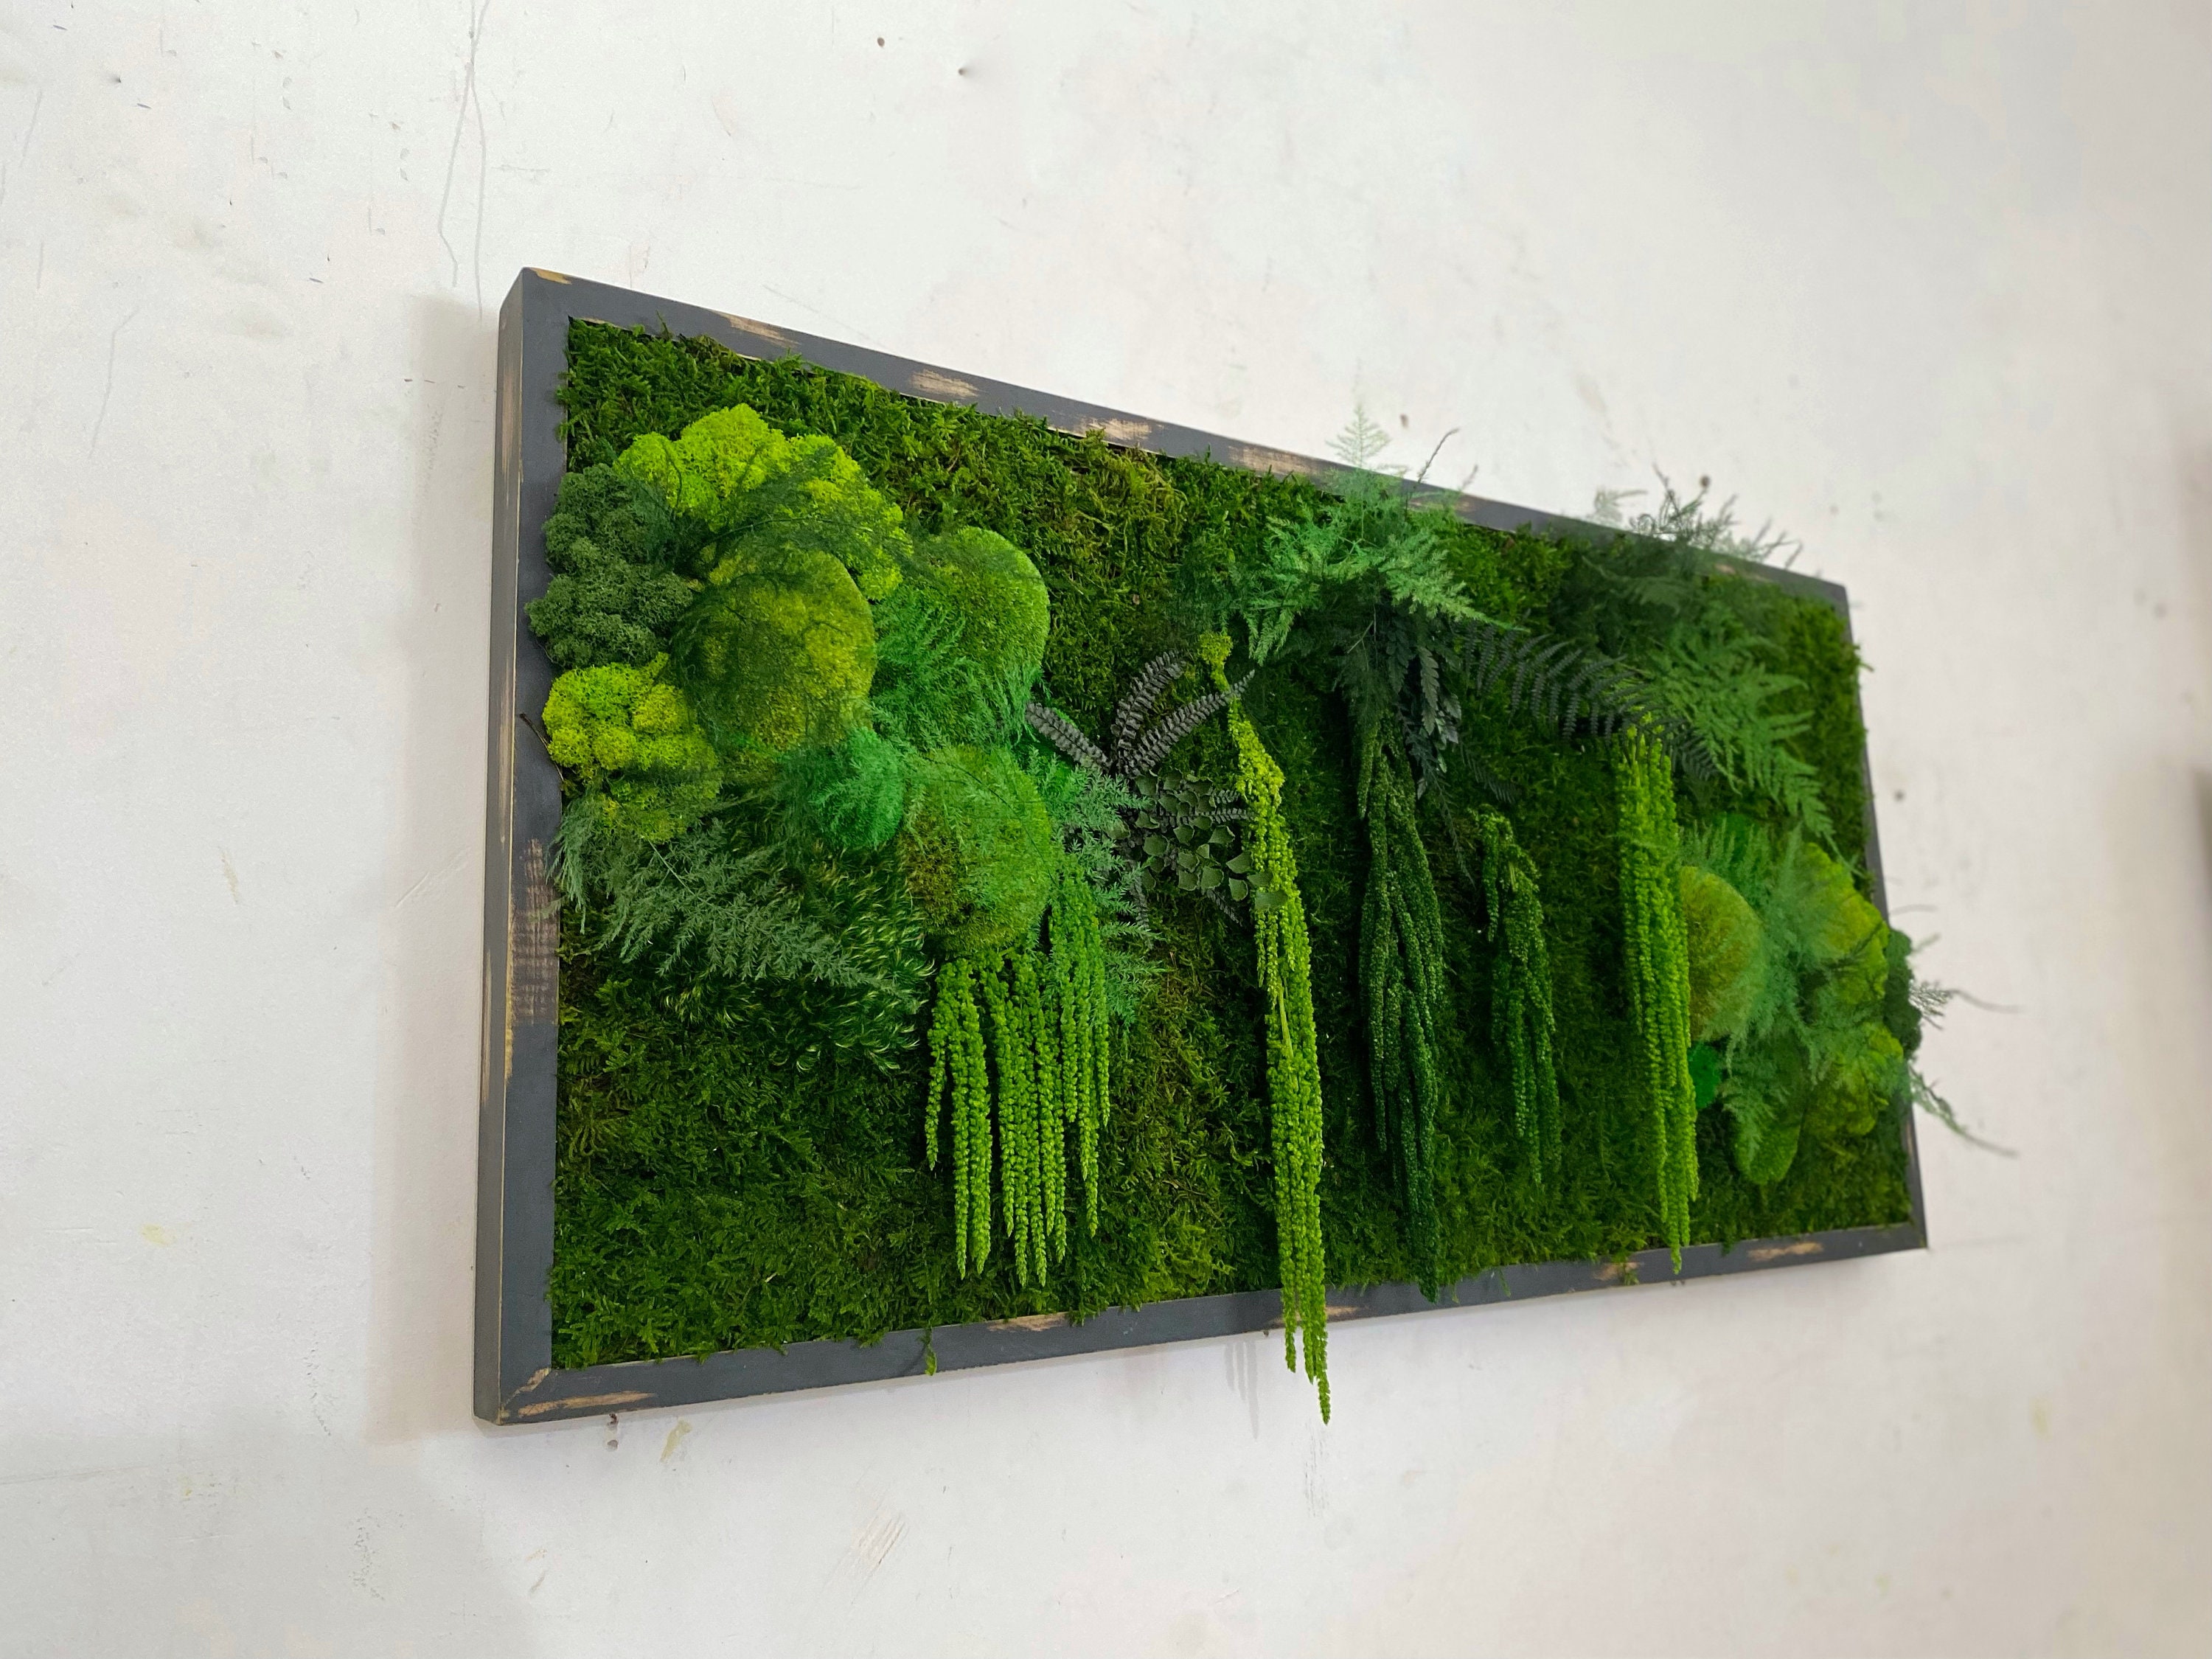 Moss Art- DIY textured wall decor in less than an hour - A Life Unfolding